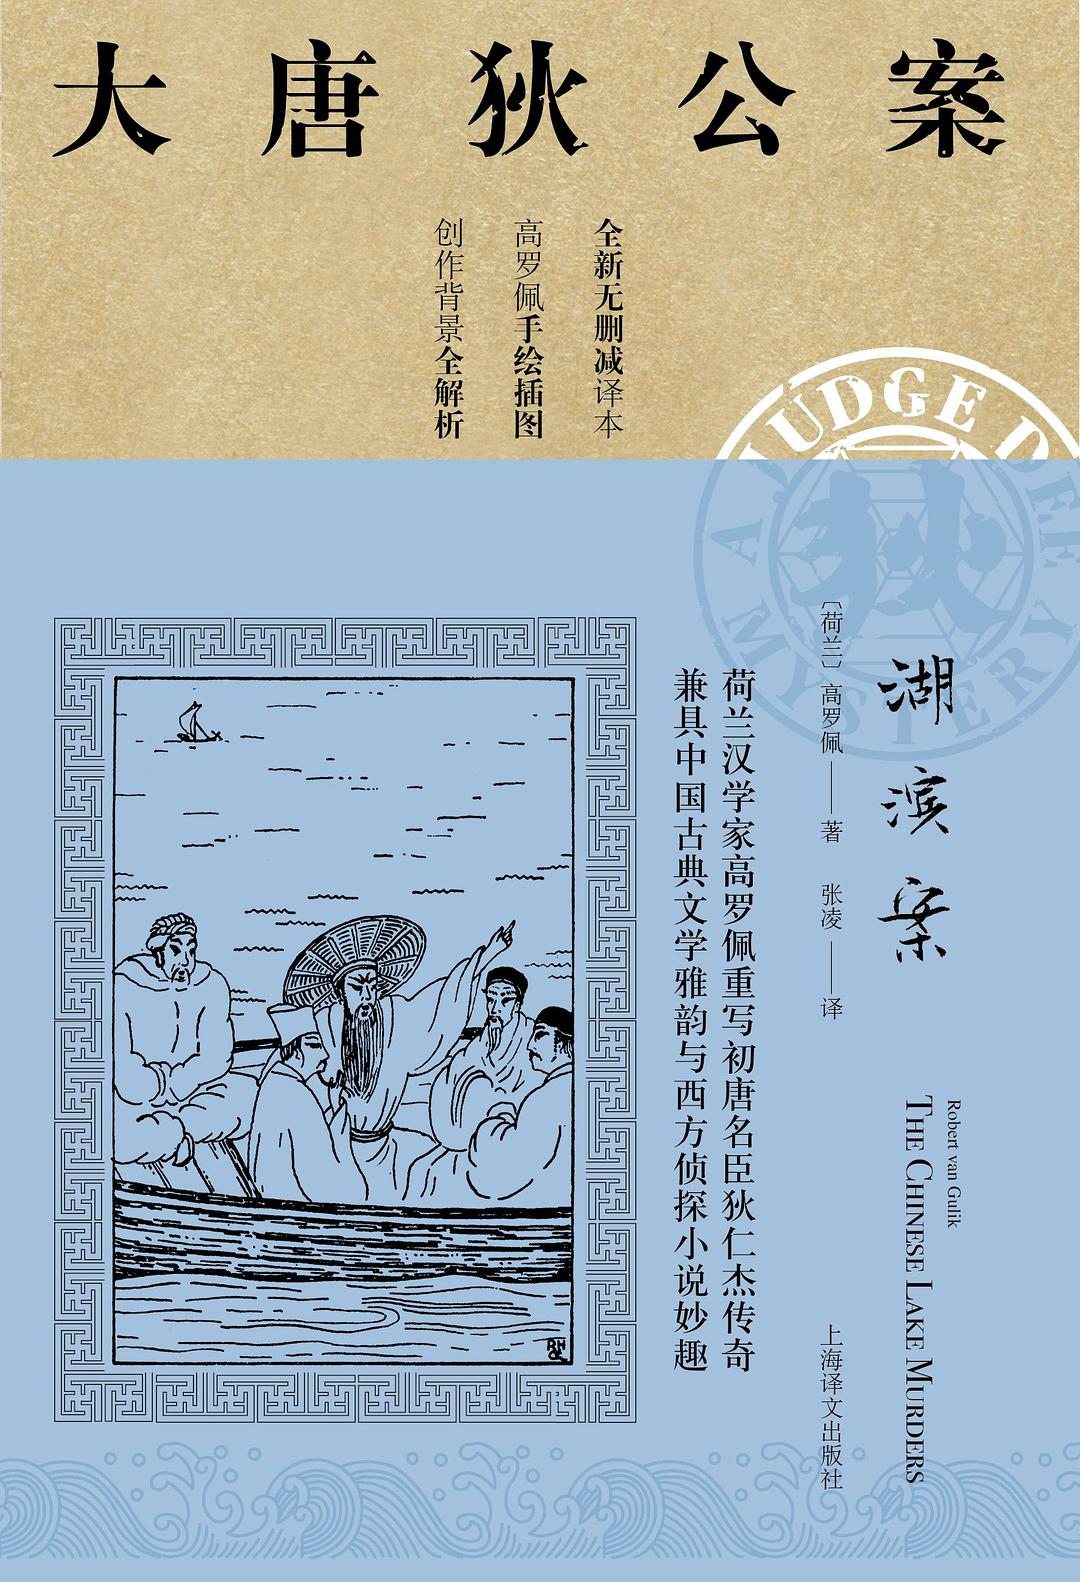 湖滨案 (Chinese language, 2019, 上海译文出版社)